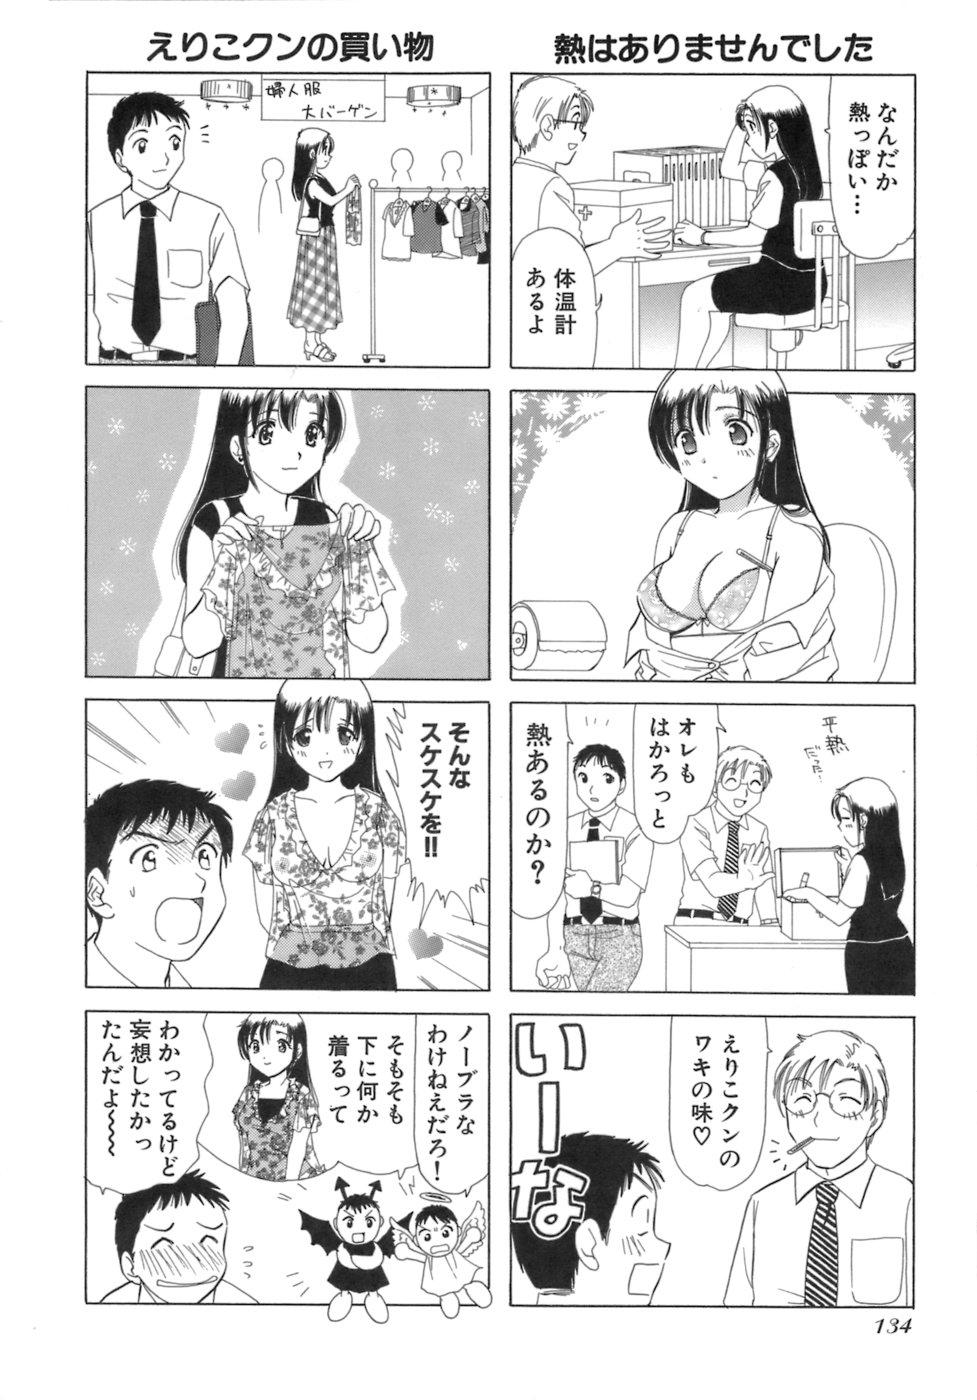 Eriko-kun, Ocha!! Vol.03 136